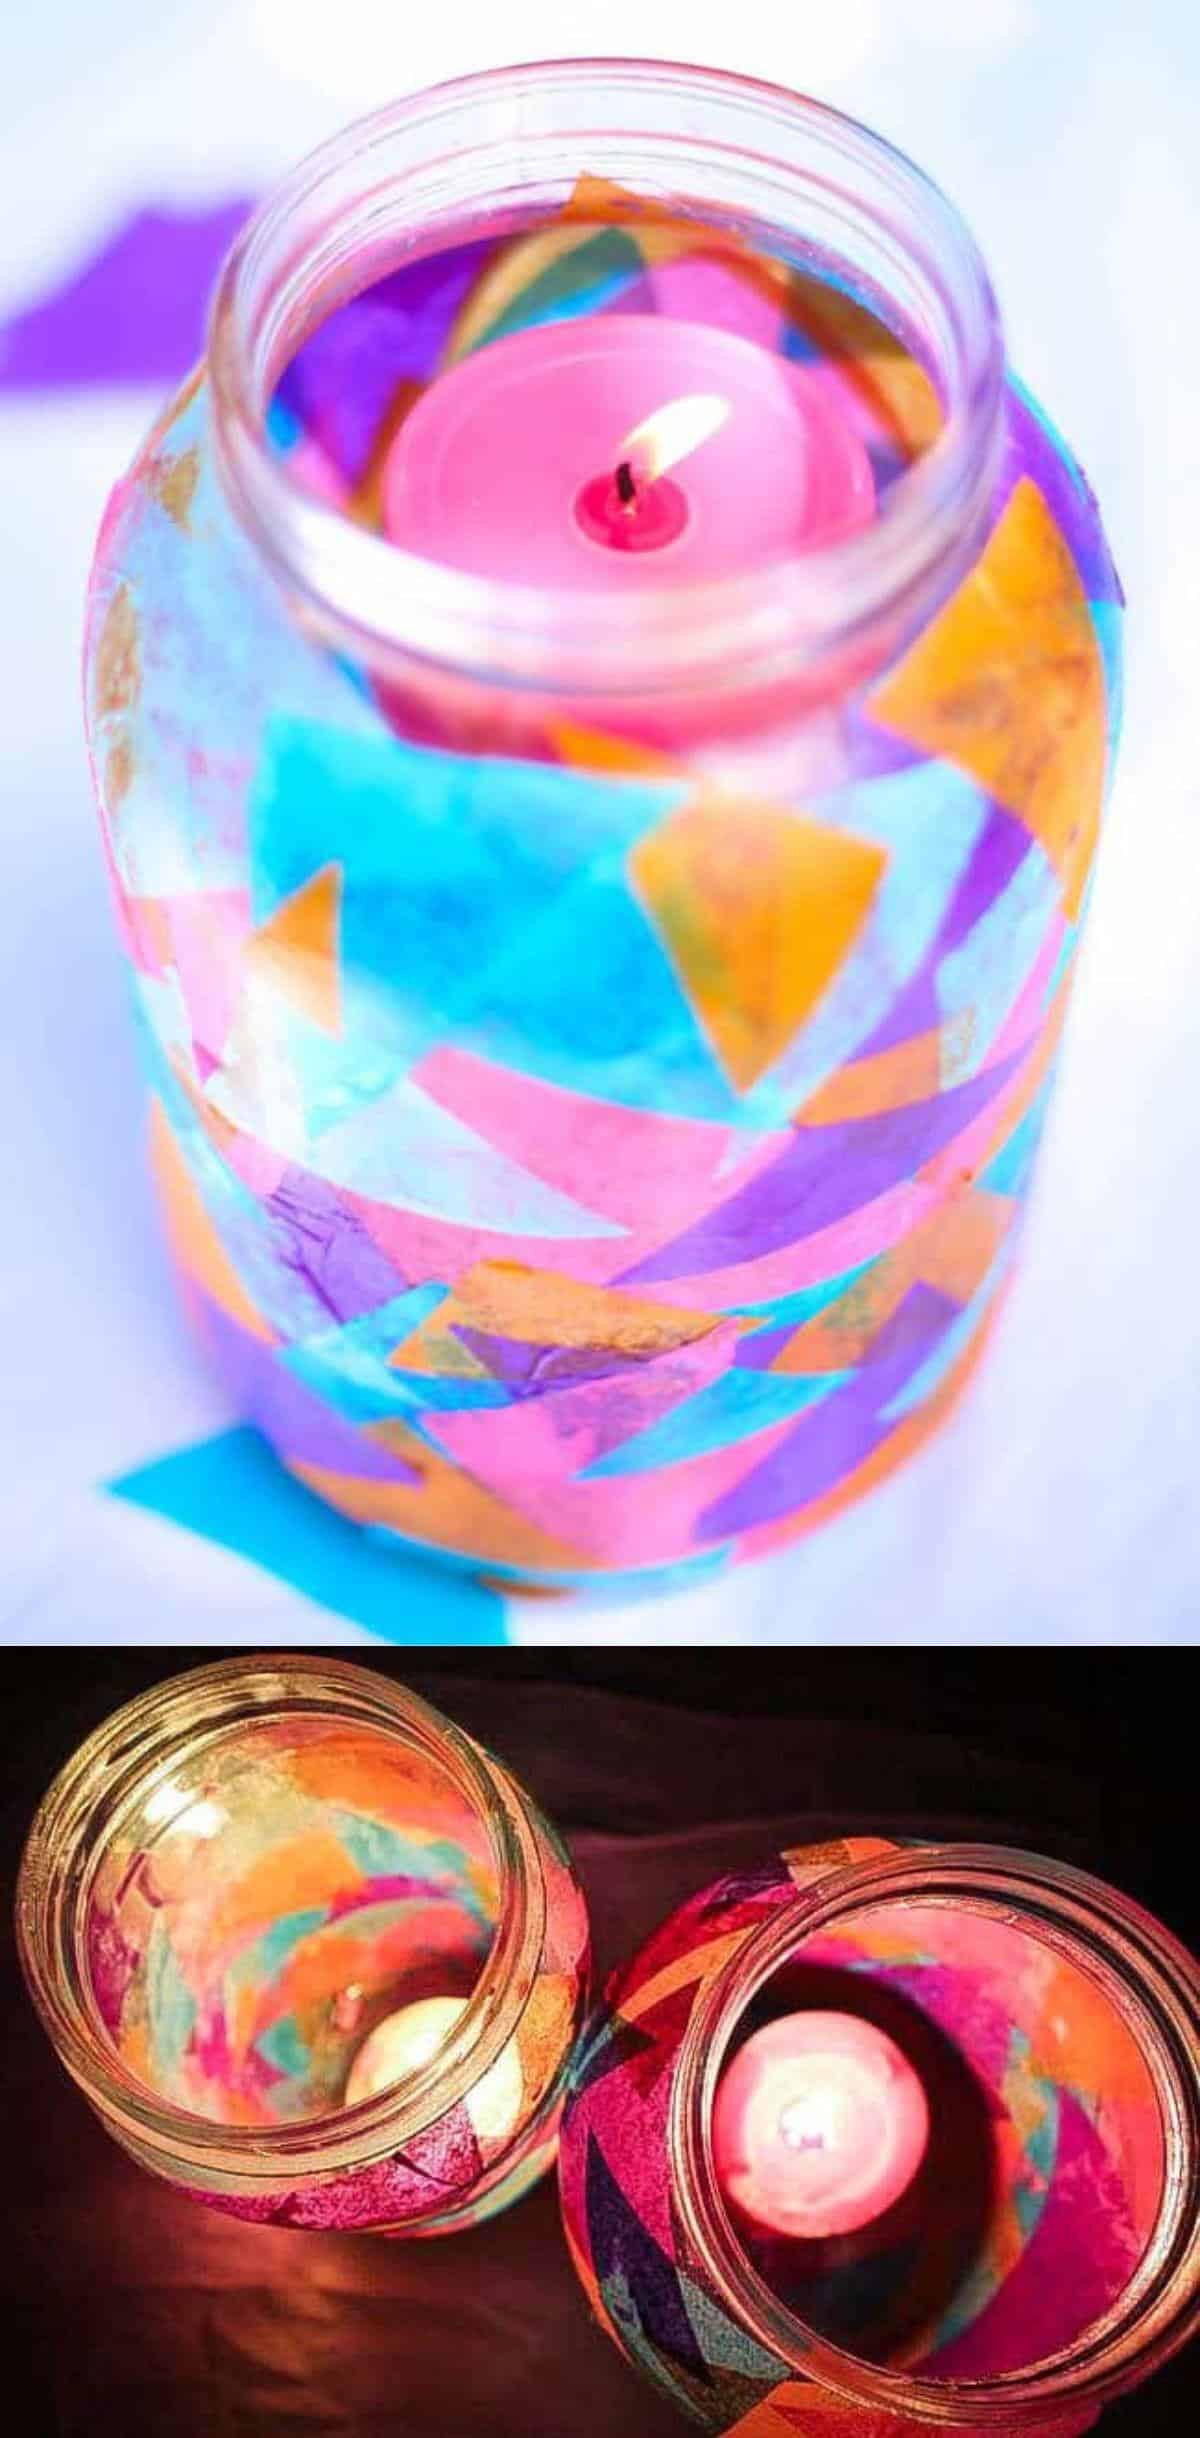 Tissue Paper Jar Lanterns